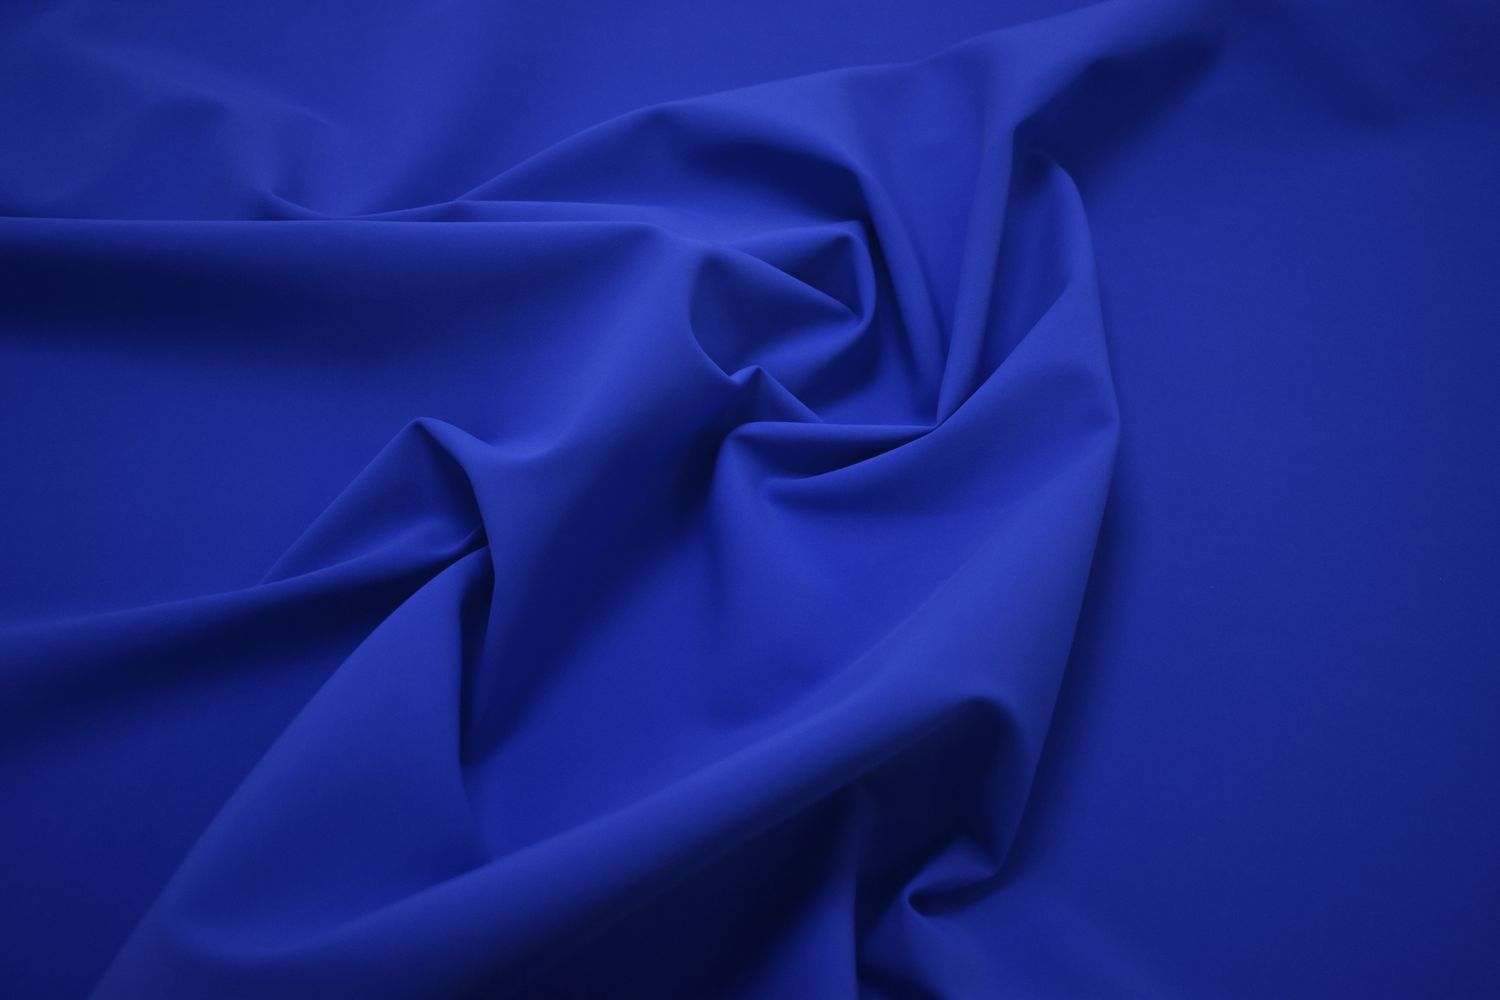 Бифлекс однотонный ярко-синего цвета W-128518